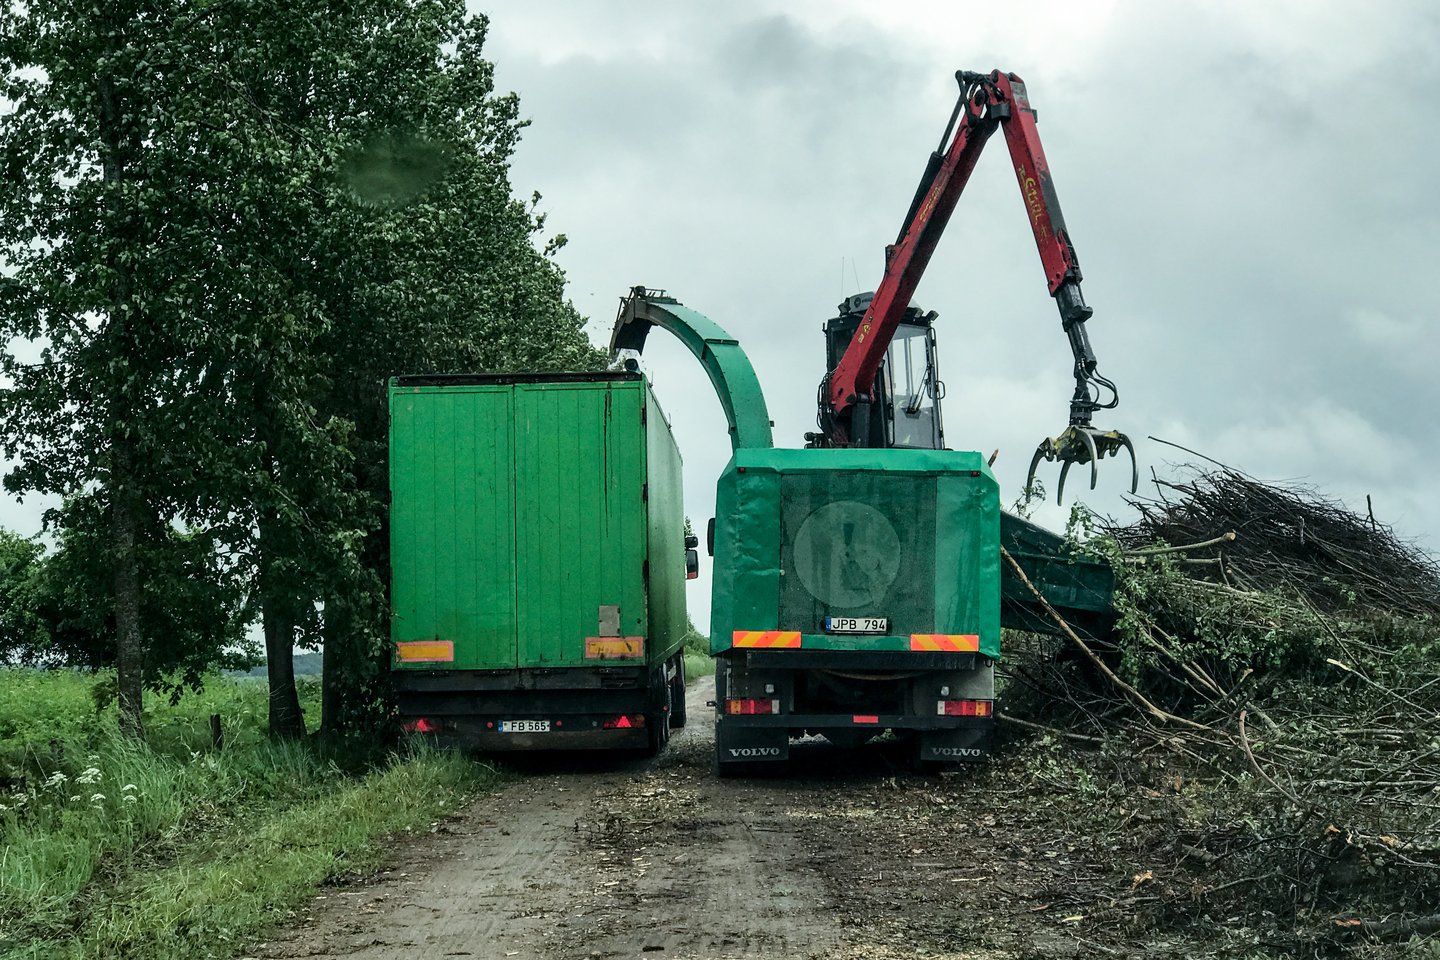   Lietuvos centralizuotame šilumos tiekime ir pramonės įmonėse biokuras užima vis didesnę dalį.<br> V.Ščiavinsko nuotr. 